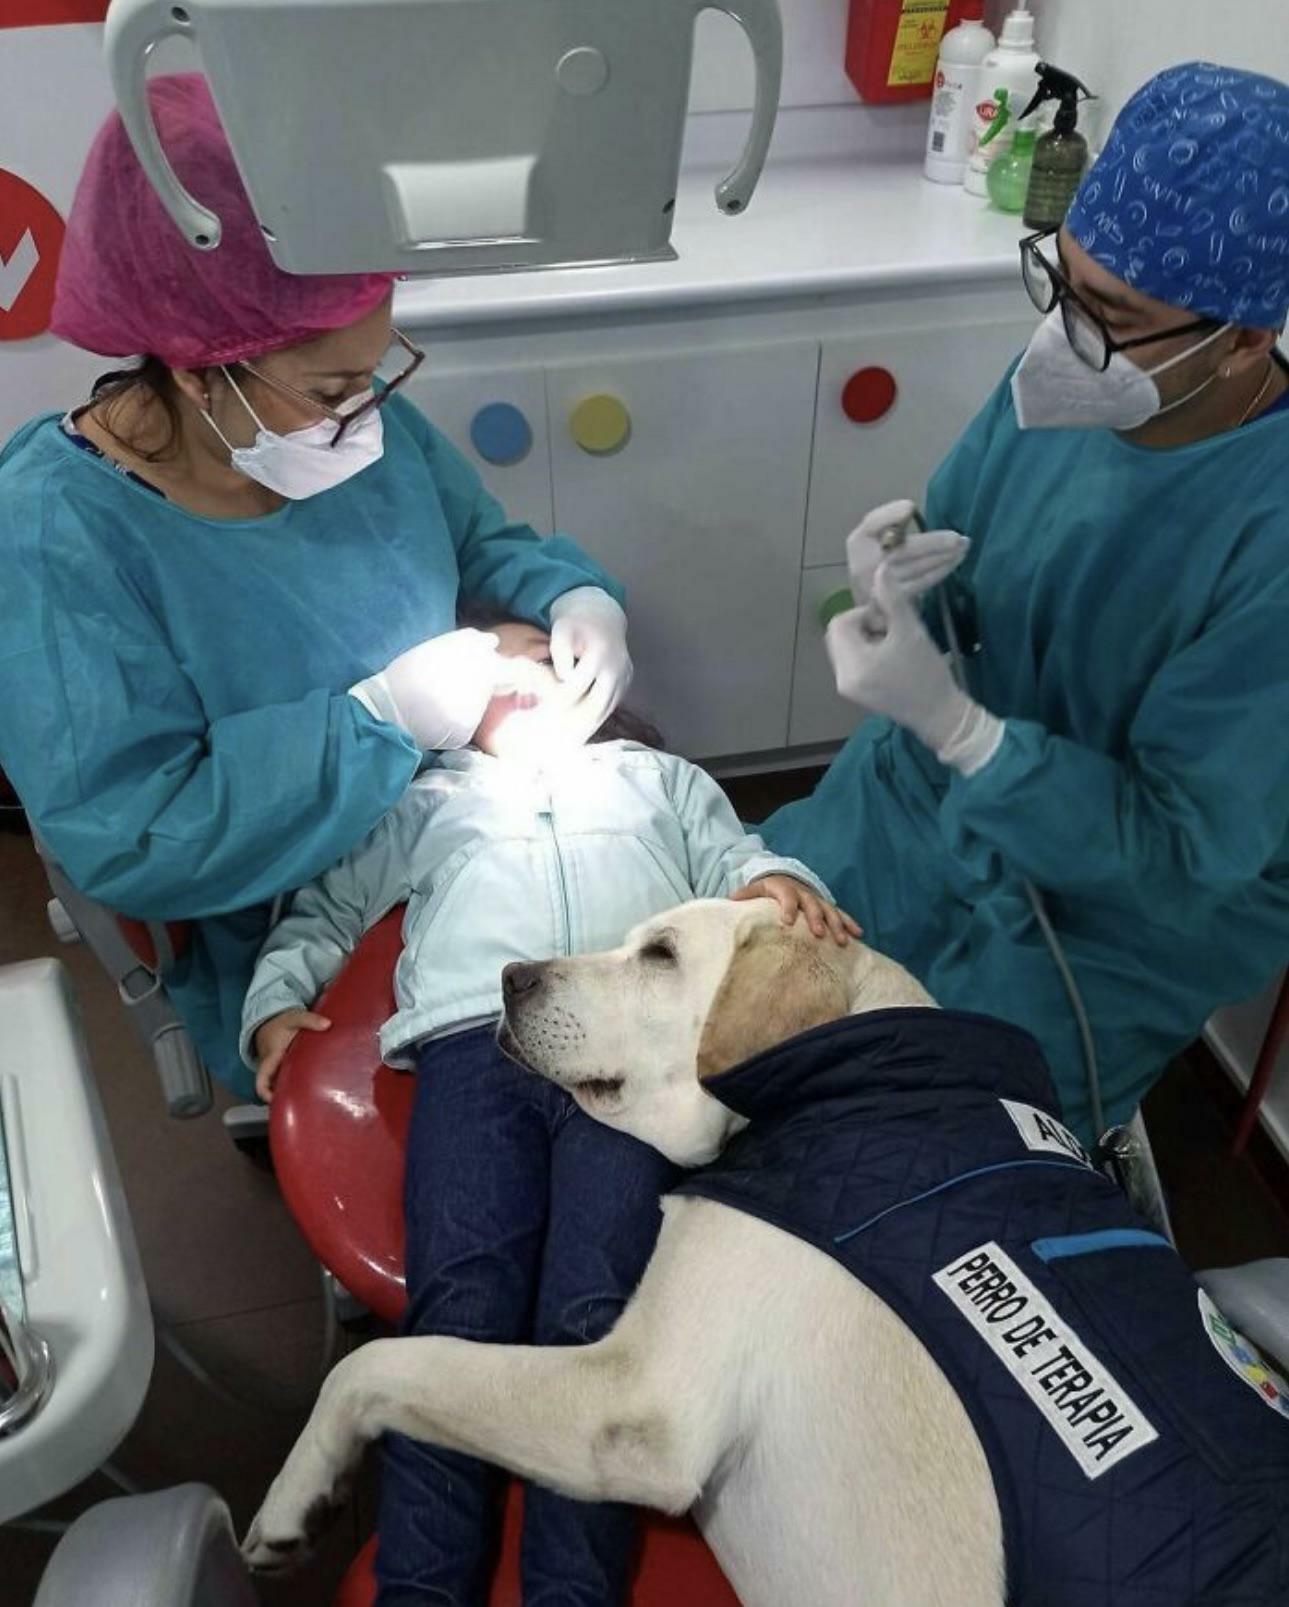 Un chien de soutien adorable qui réconforte les enfants chez le dentiste, ça n’a pas de prix.